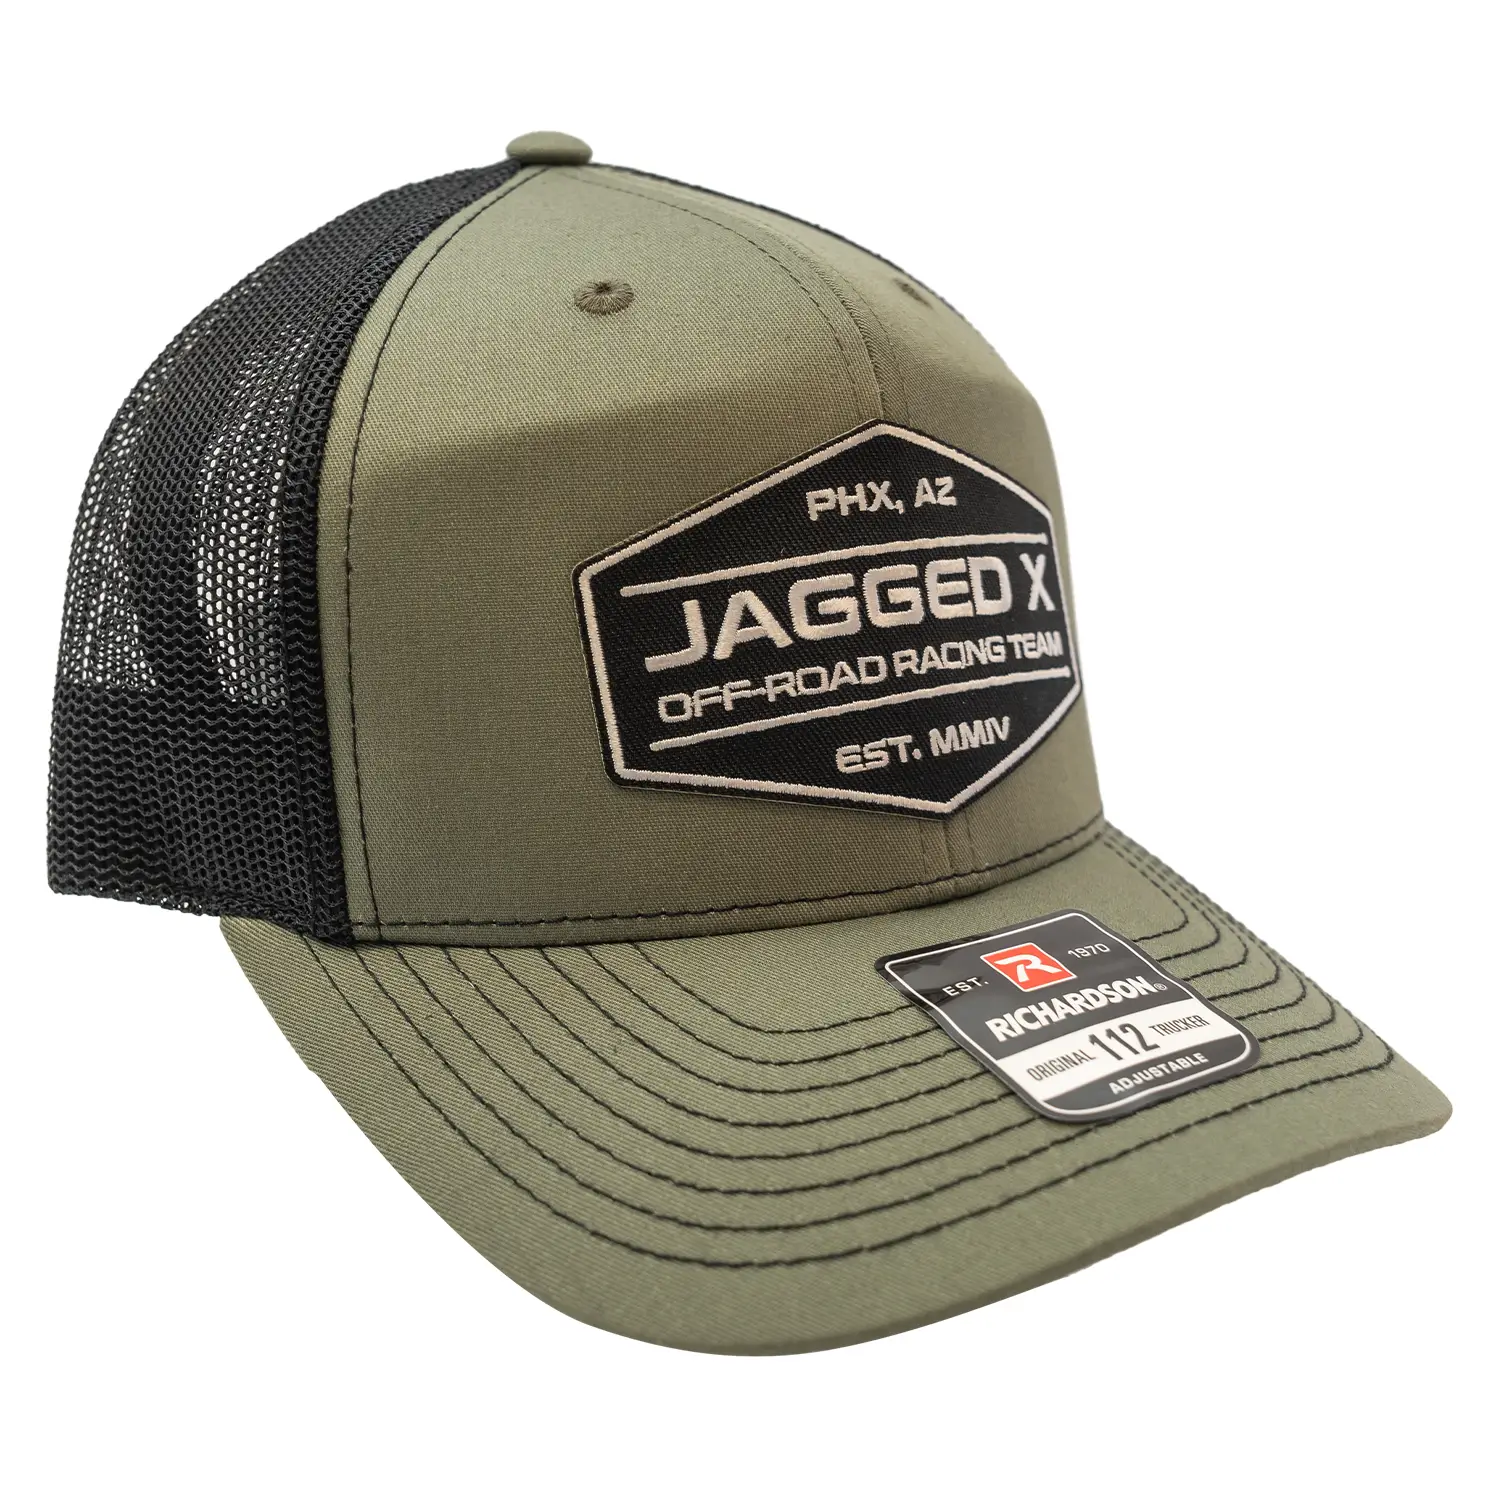 jagged x offroad trucker hat green black 3